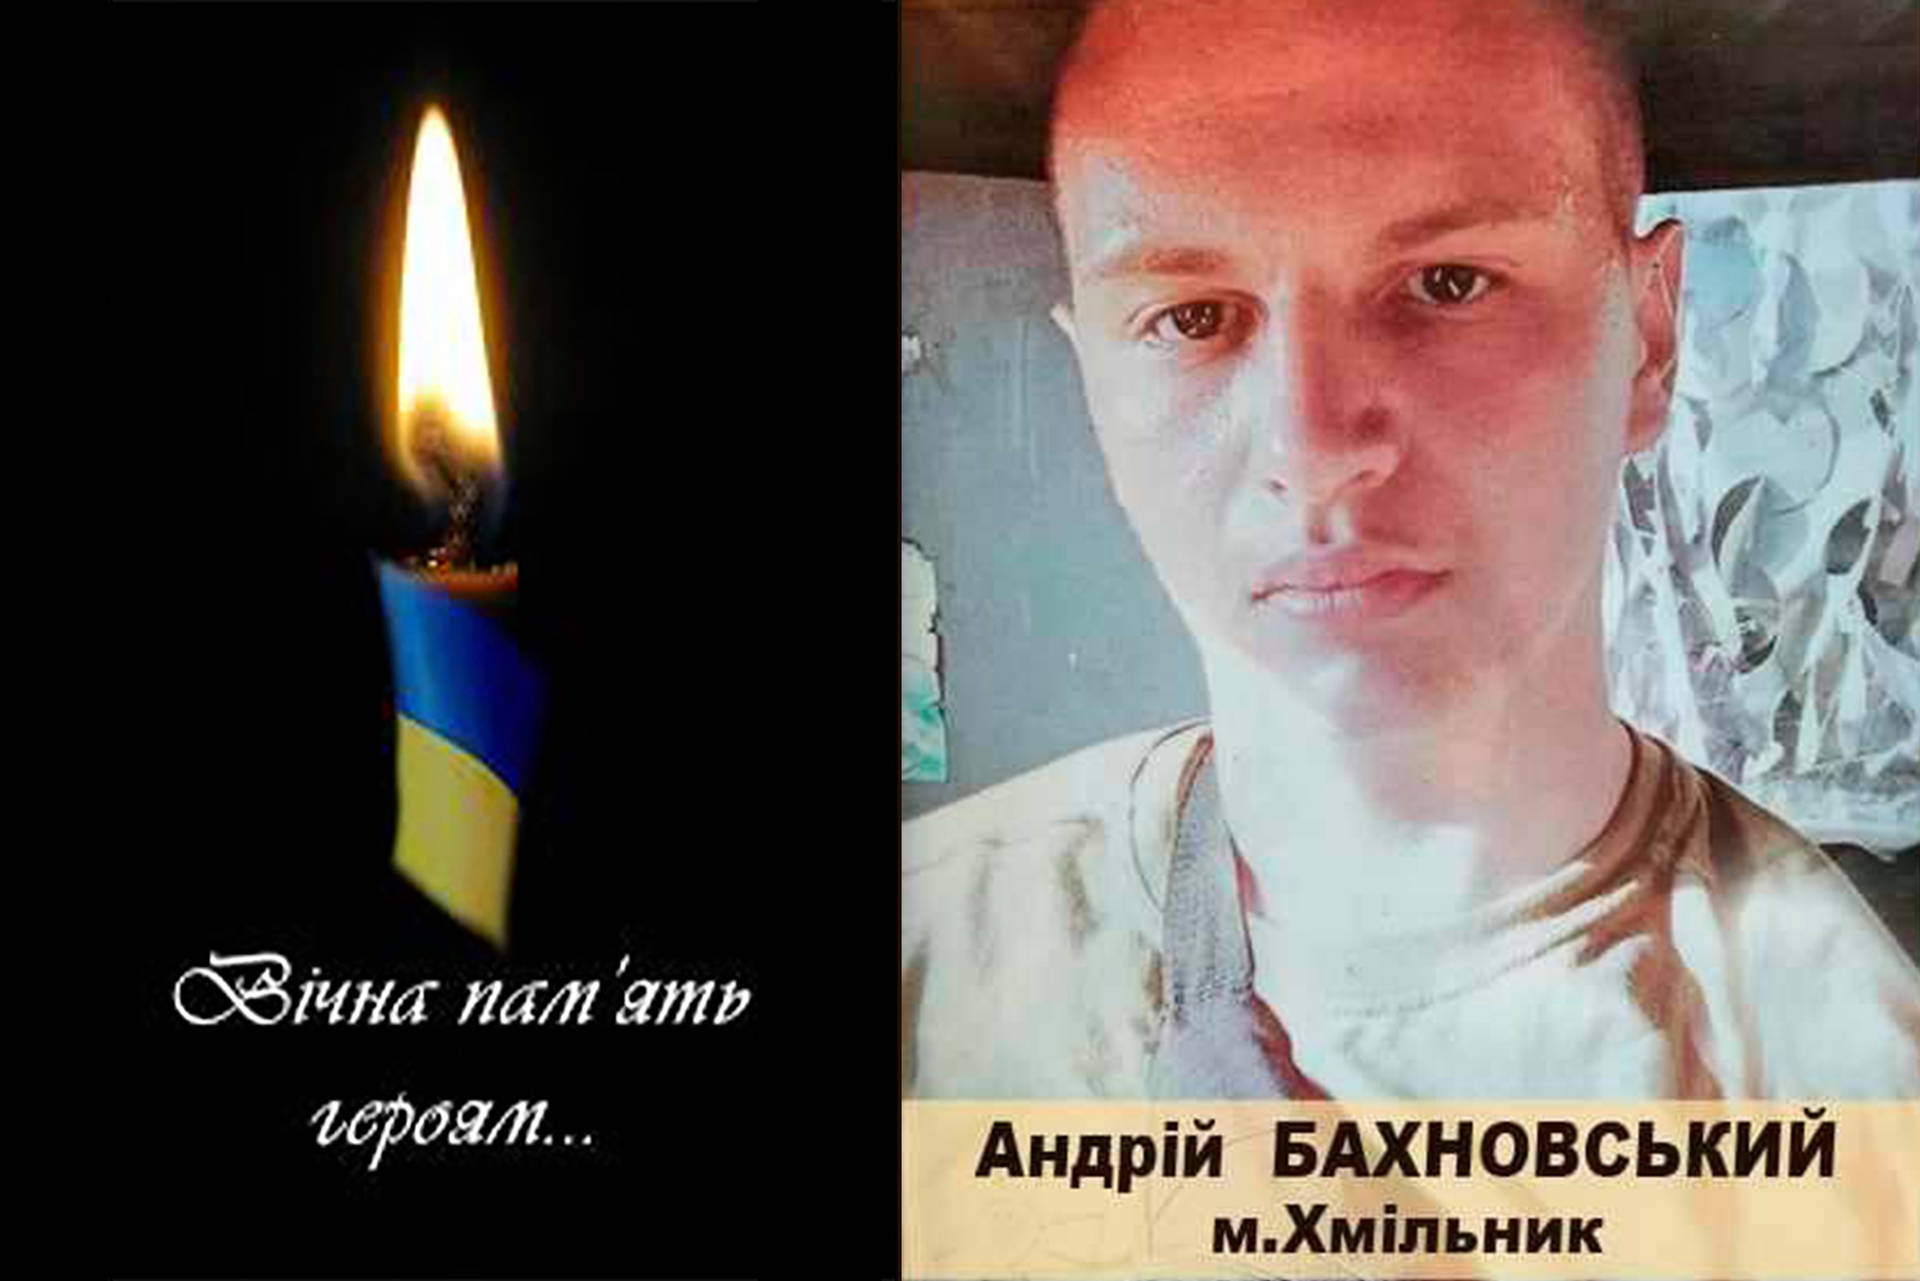 Додому у Хмільник "на щиті" повертається 22-річний захисник України Андрій Бахновський